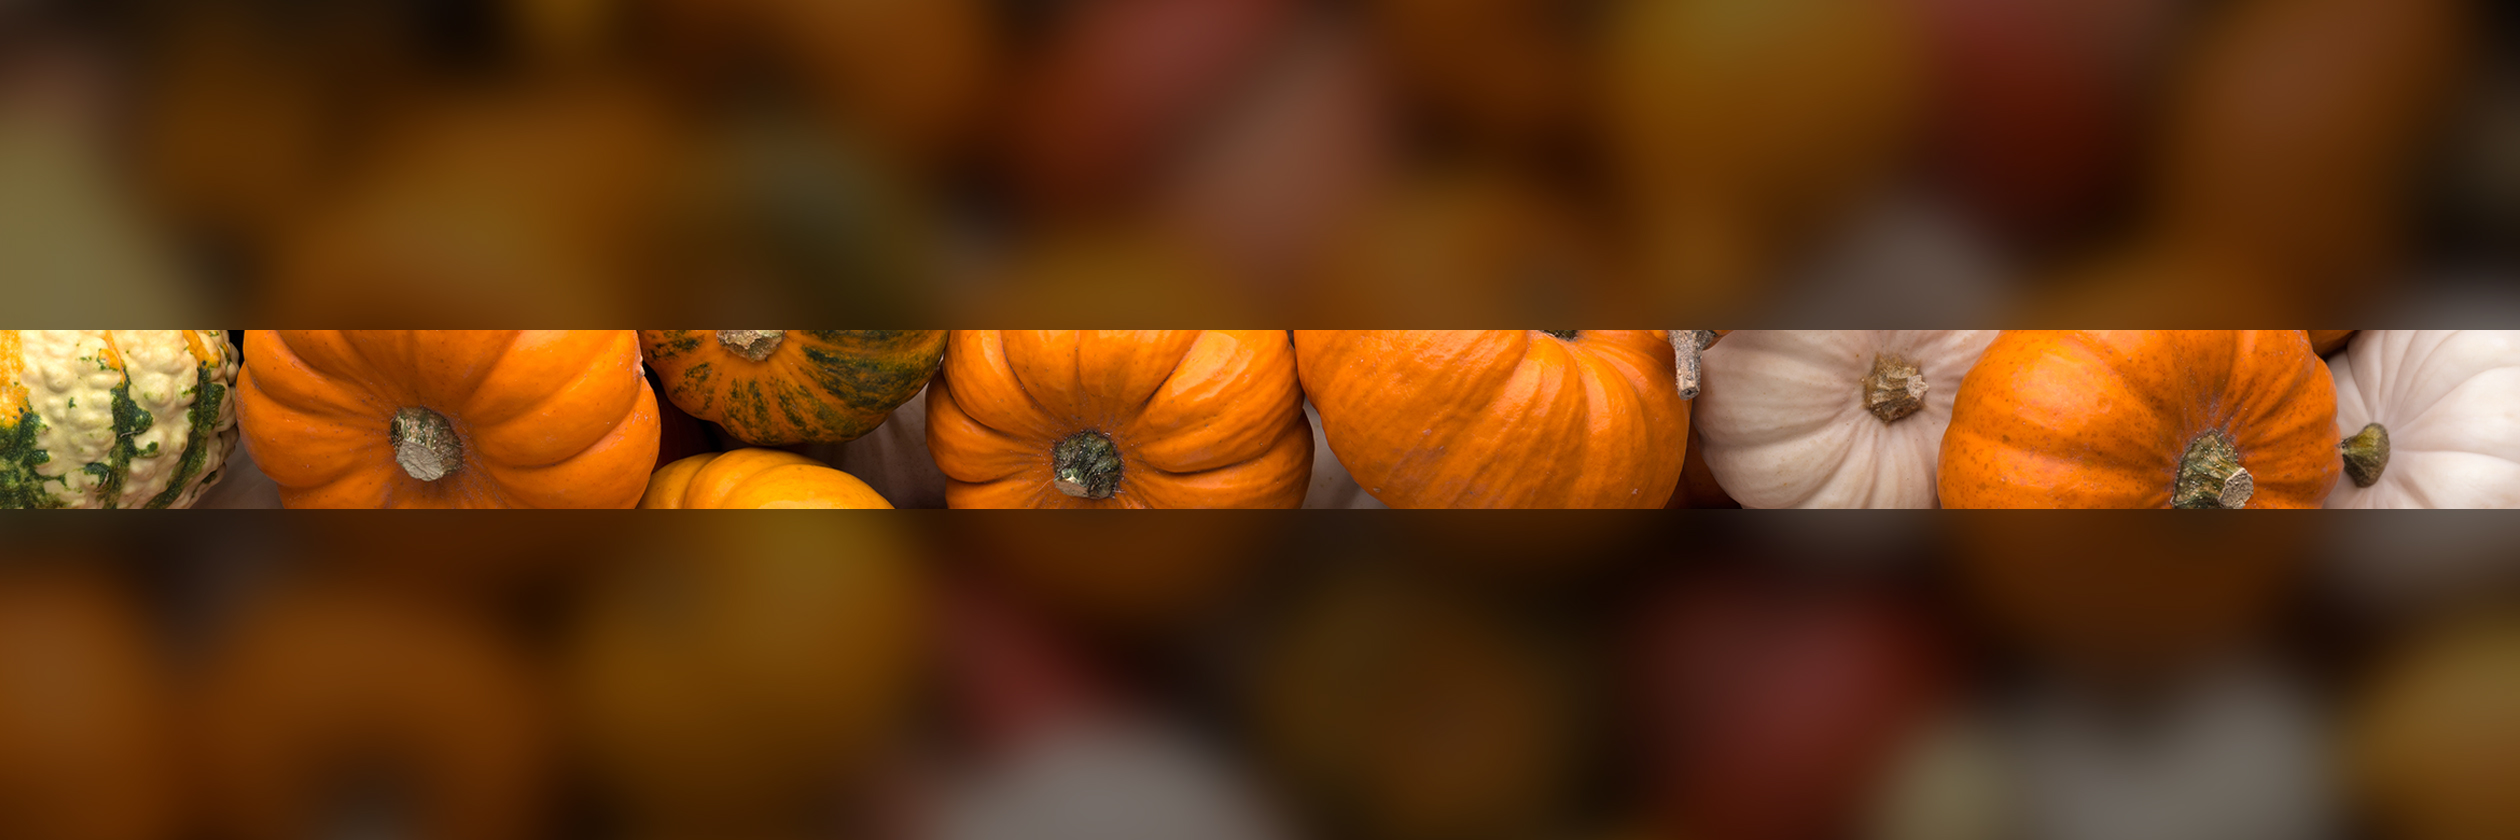 pumpkins-autumn